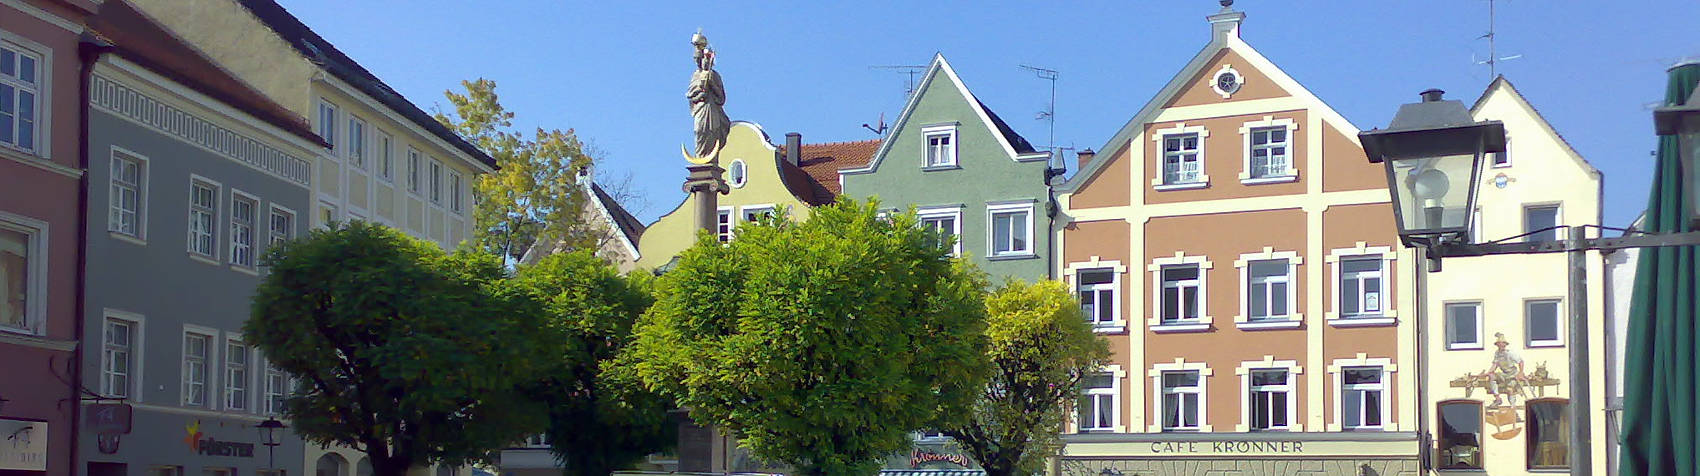 Weilheim